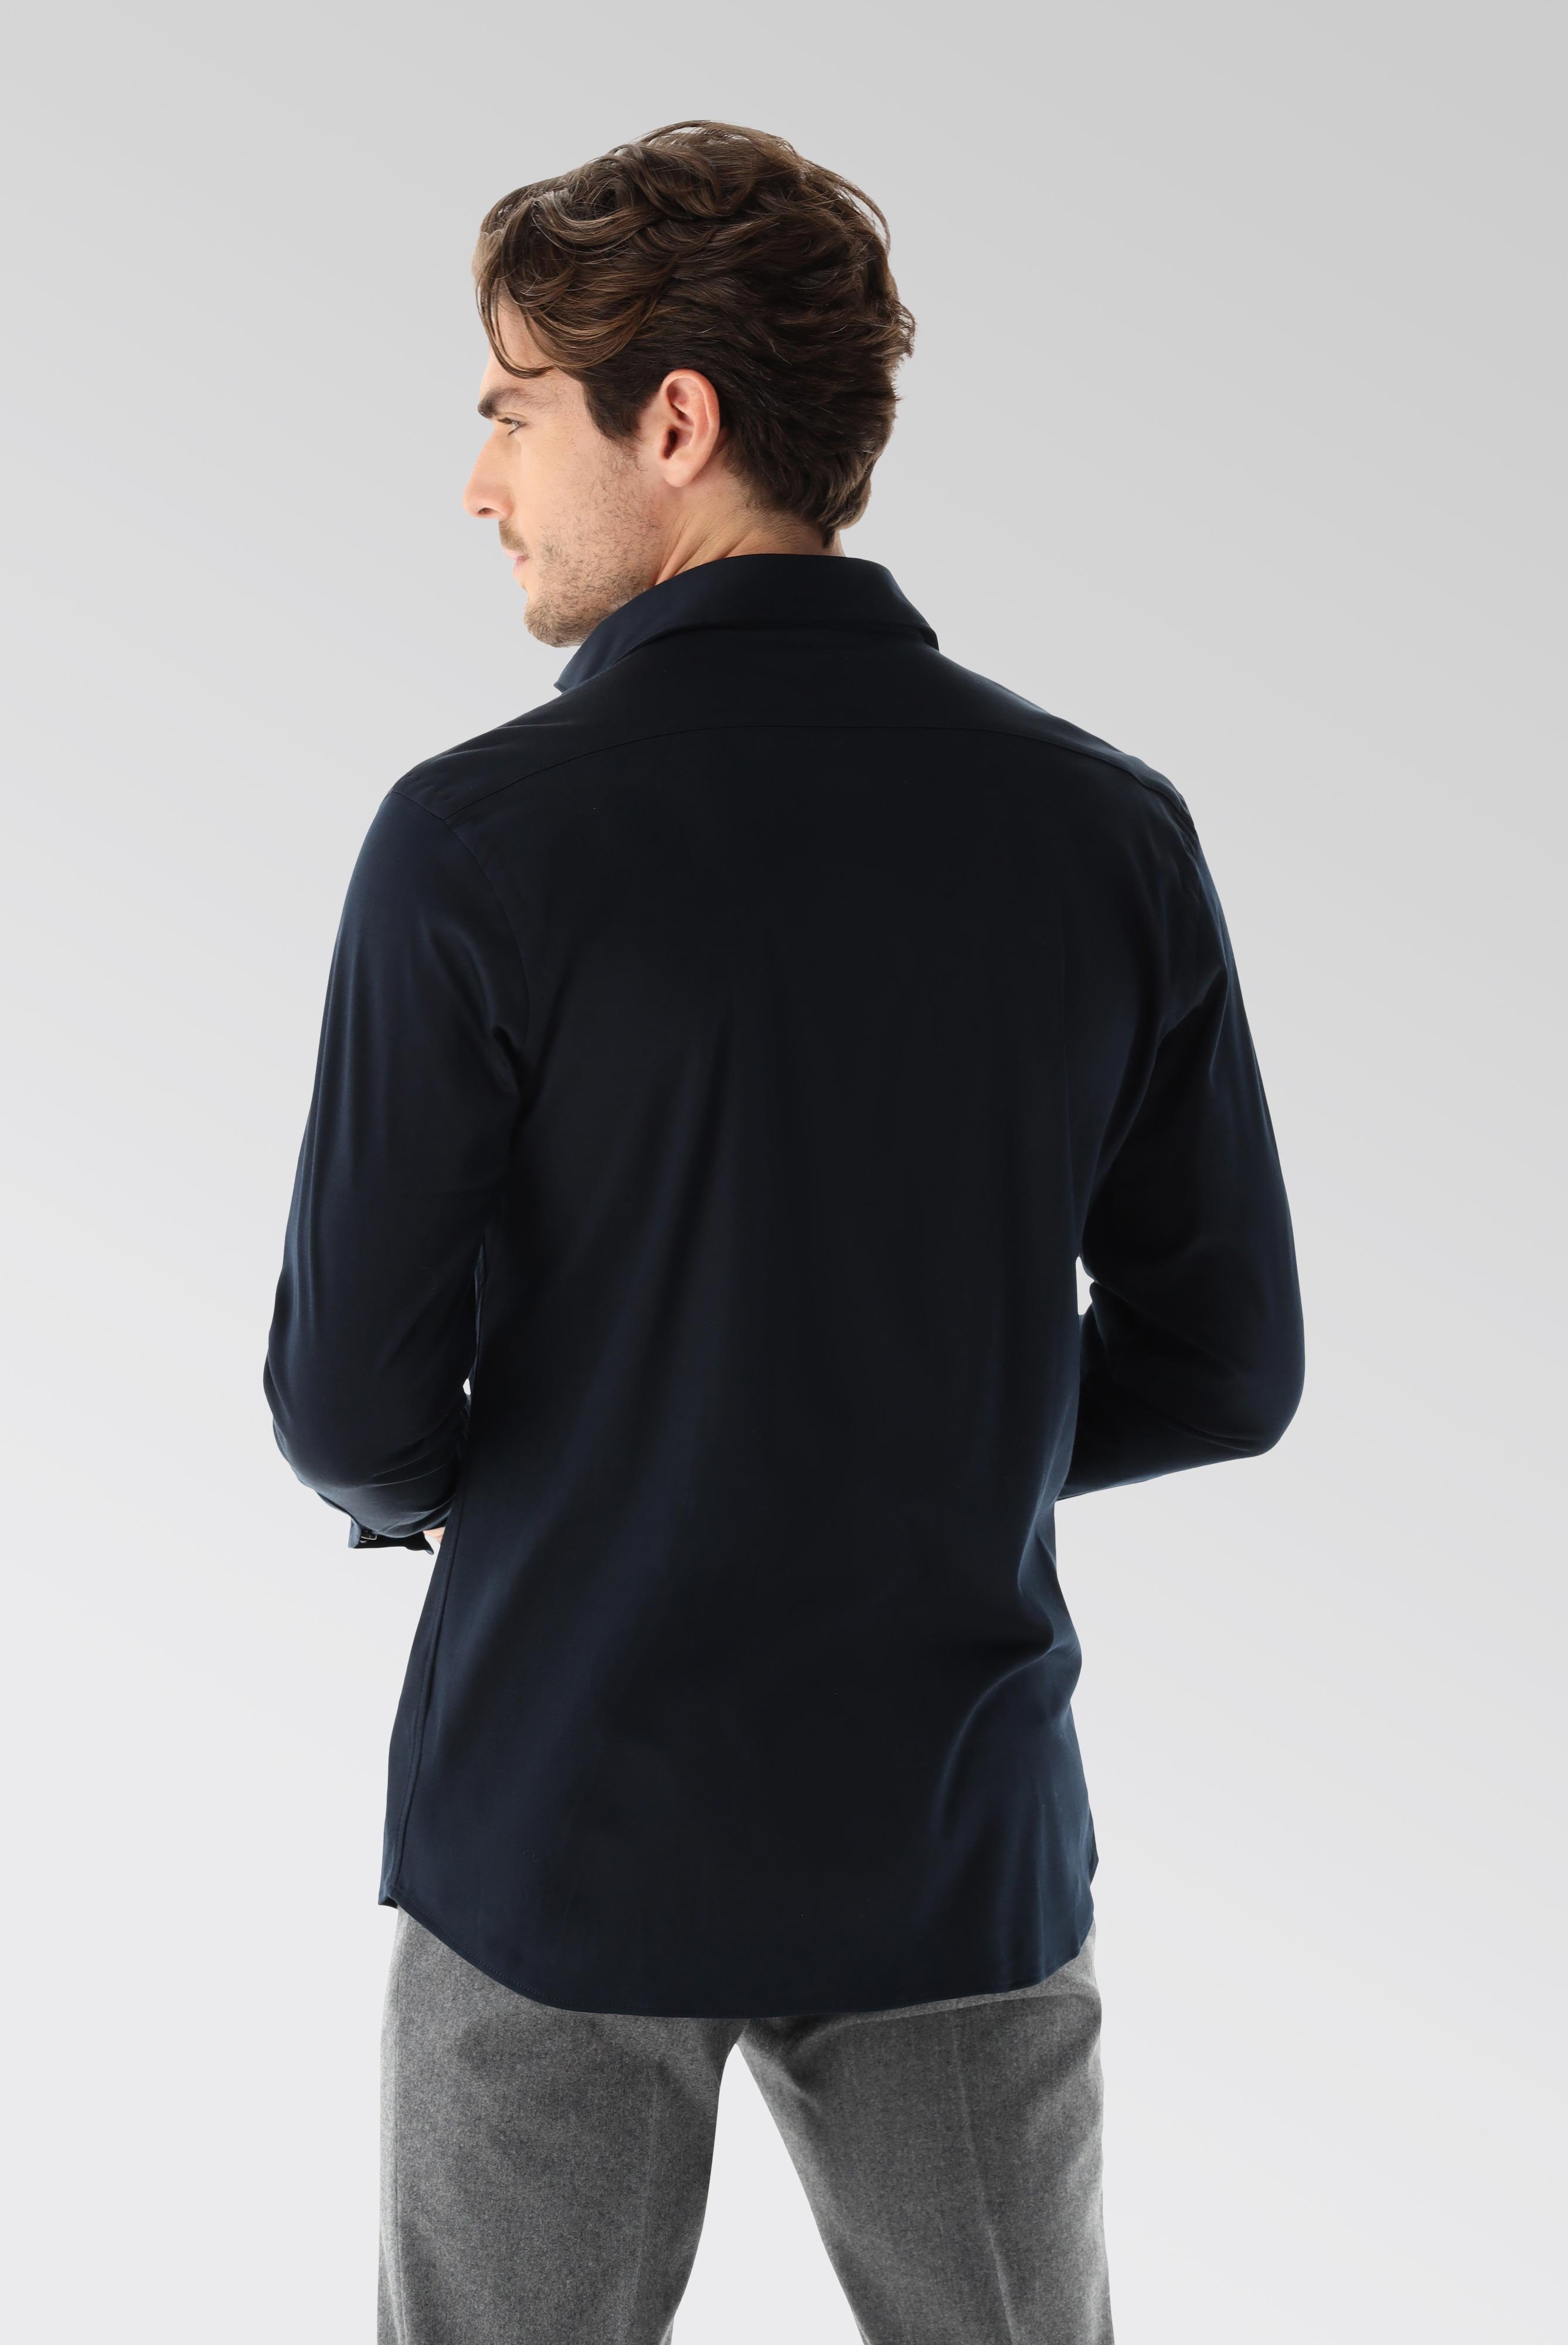 Bügelleichte Hemden+Jersey Hemd mit glänzender Optik Tailor Fit+20.1683.UC.180031.790.XXL